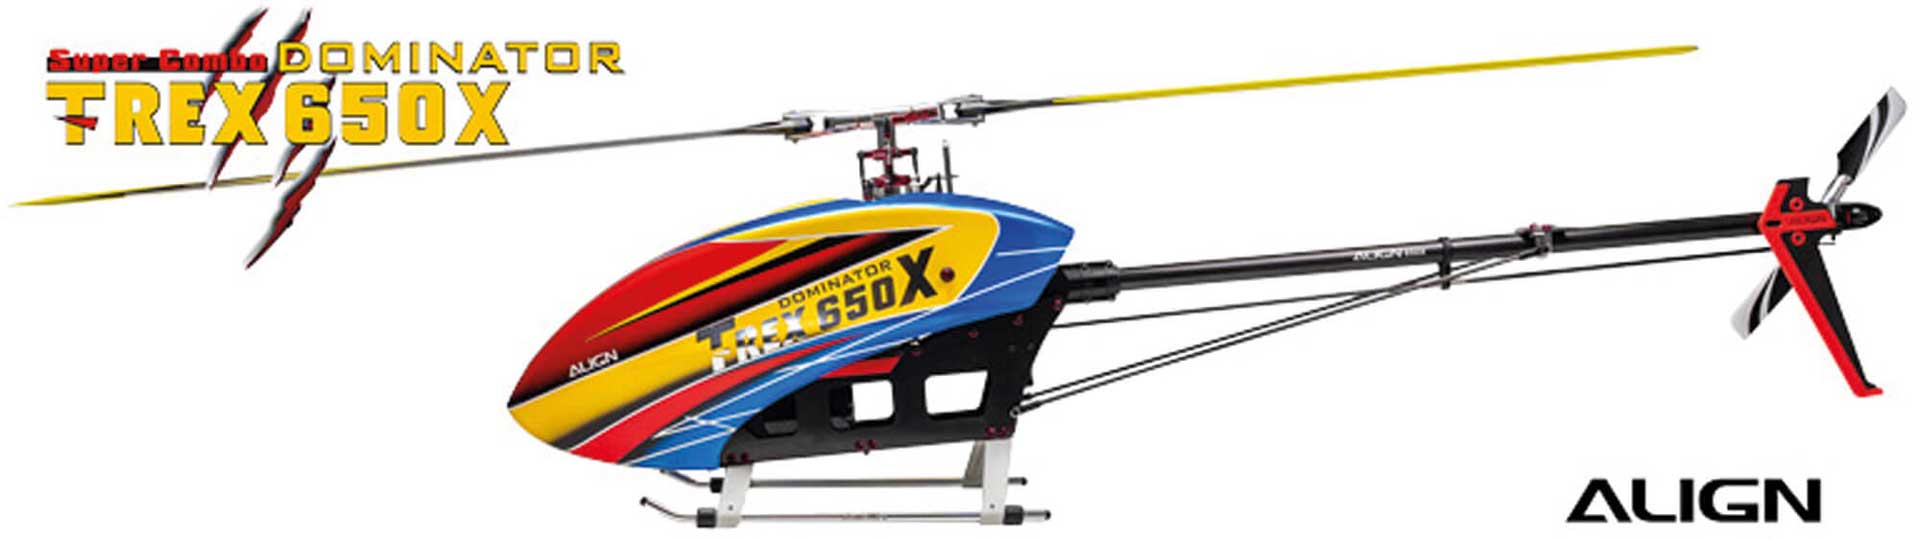 ALIGN T-REX 650X Dominator Combo (6S) Hubschrauber / Helikopter